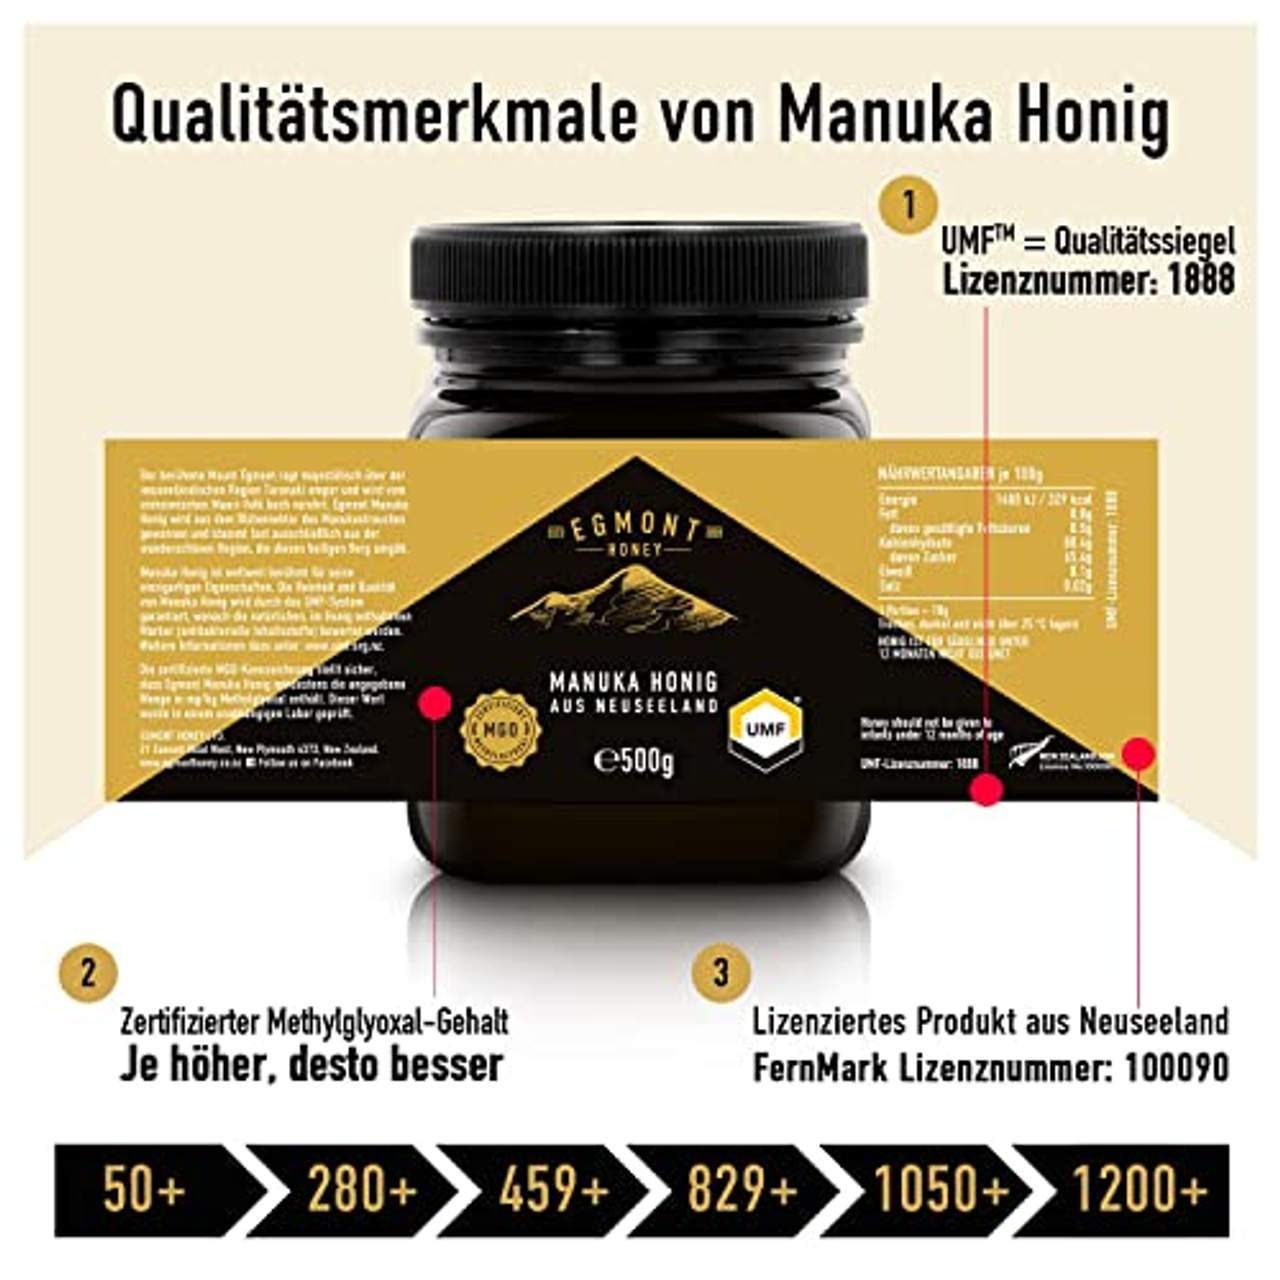 Egmont Honey Manuka-Honig 450+ MGO original aus Neuseeland UMF 14+